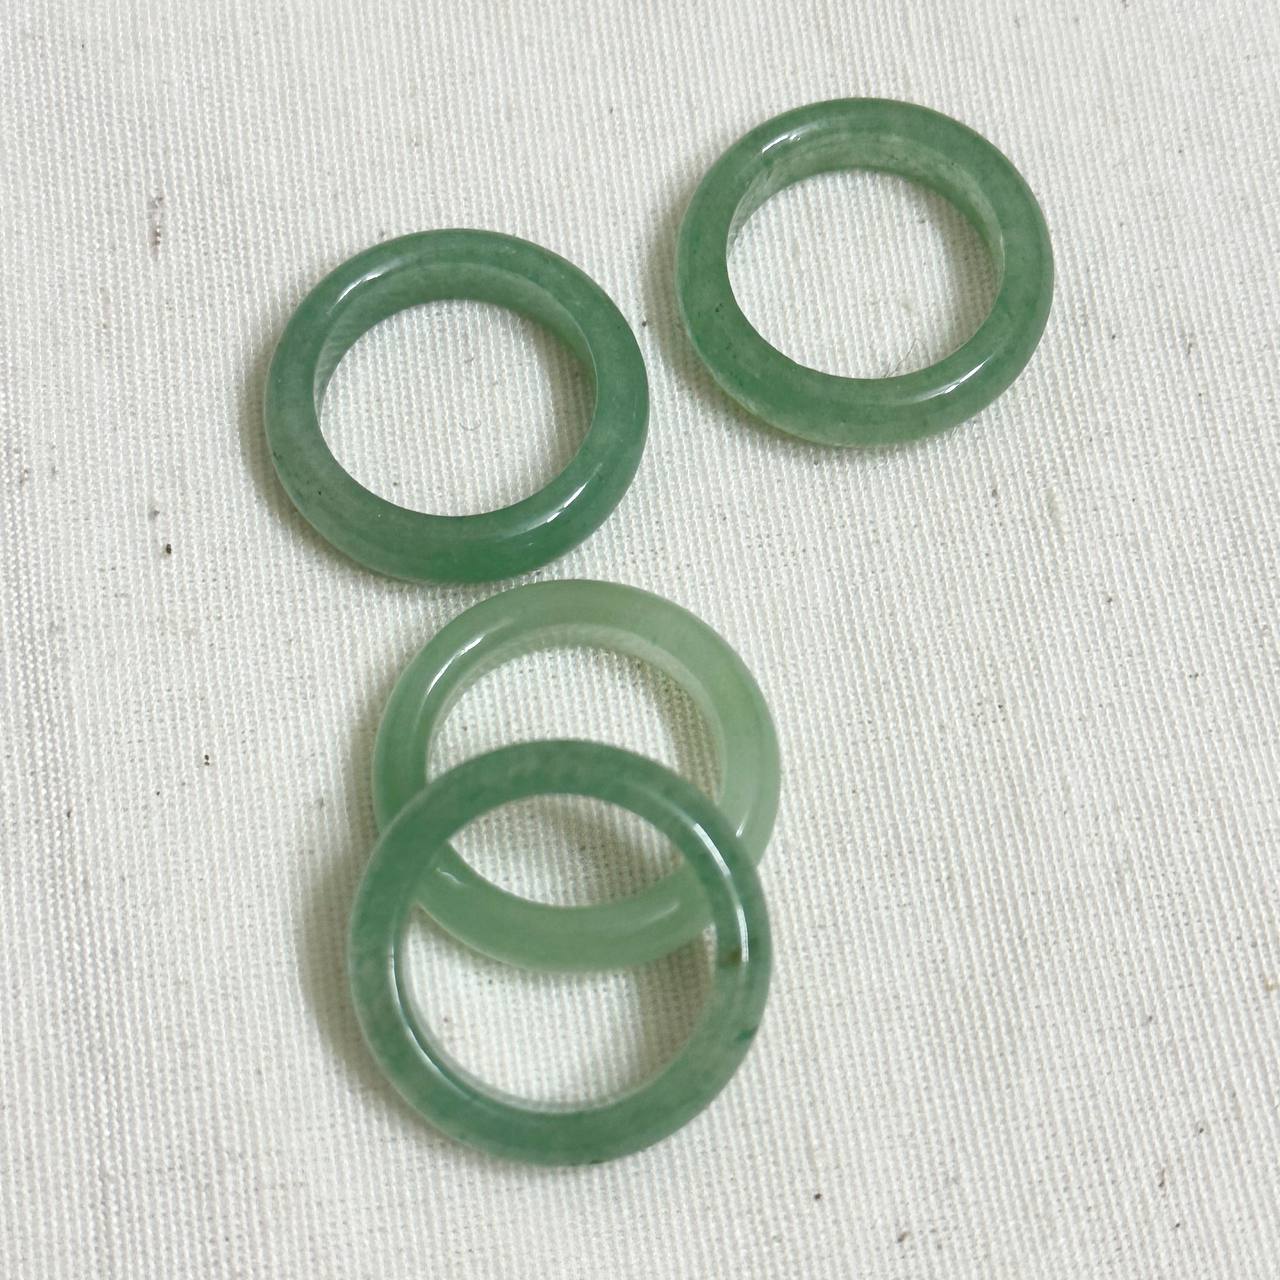 حلقه ی آونتورین سبزسایز متوسط